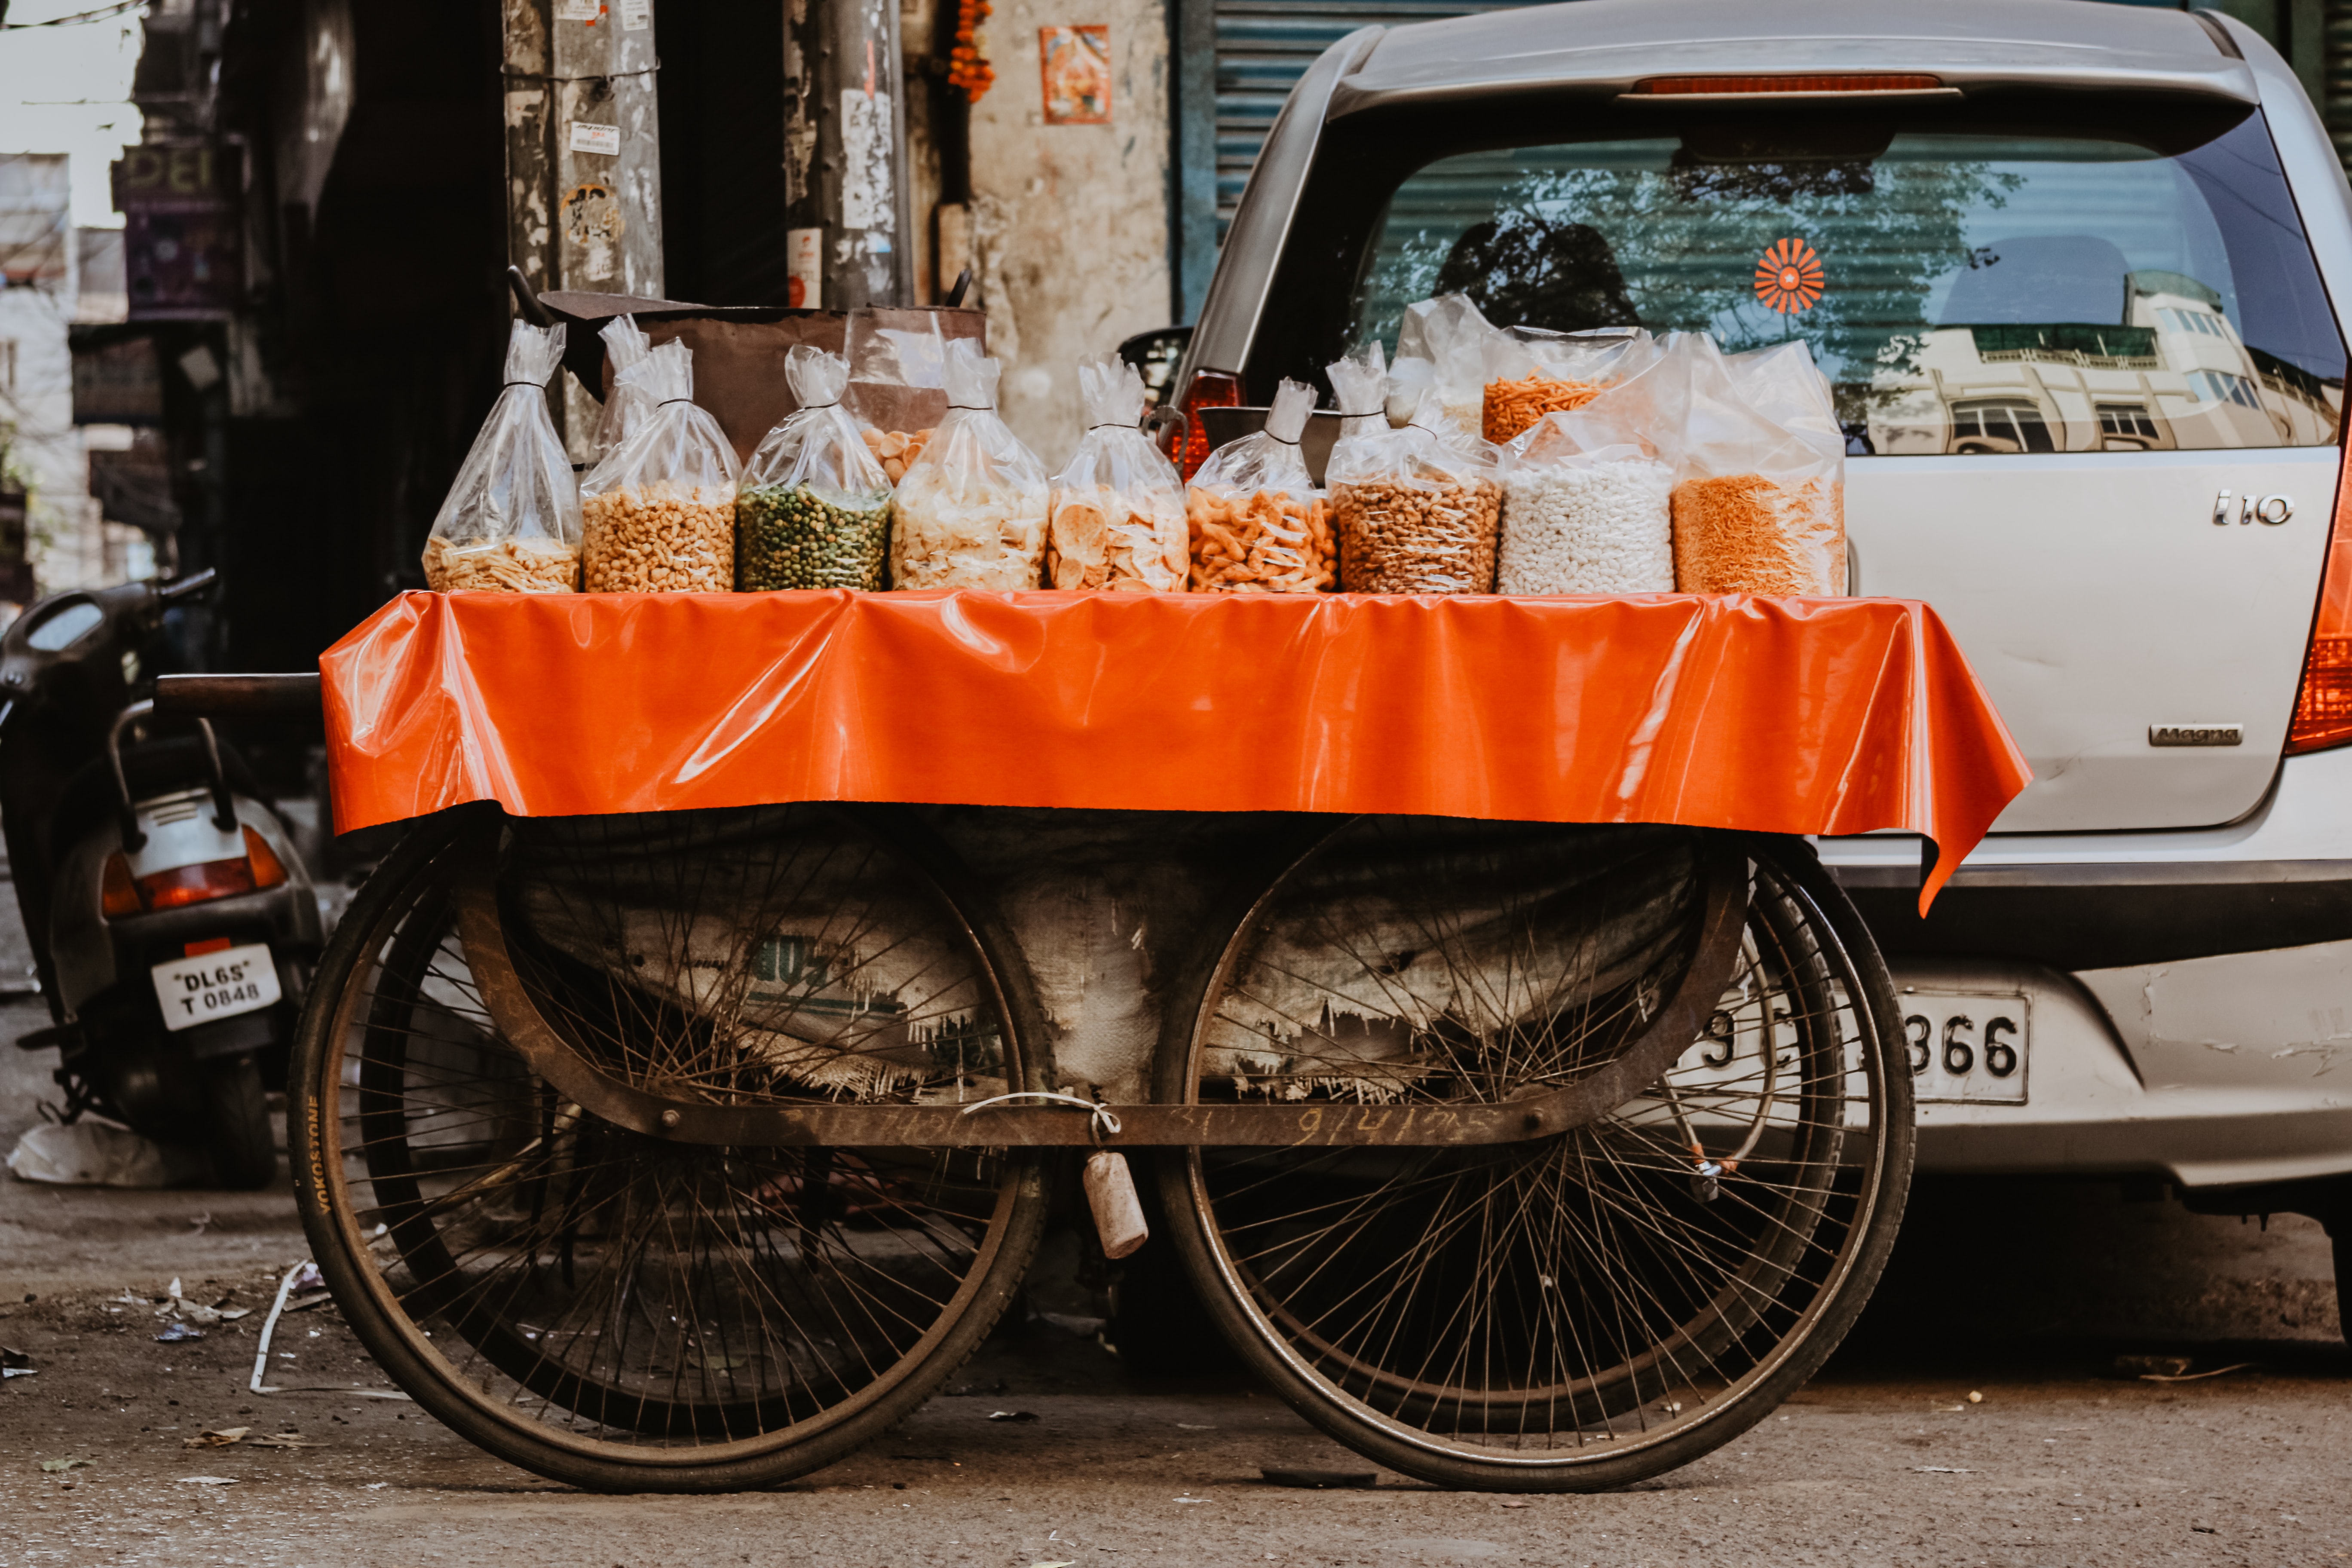 An Indian street food cart